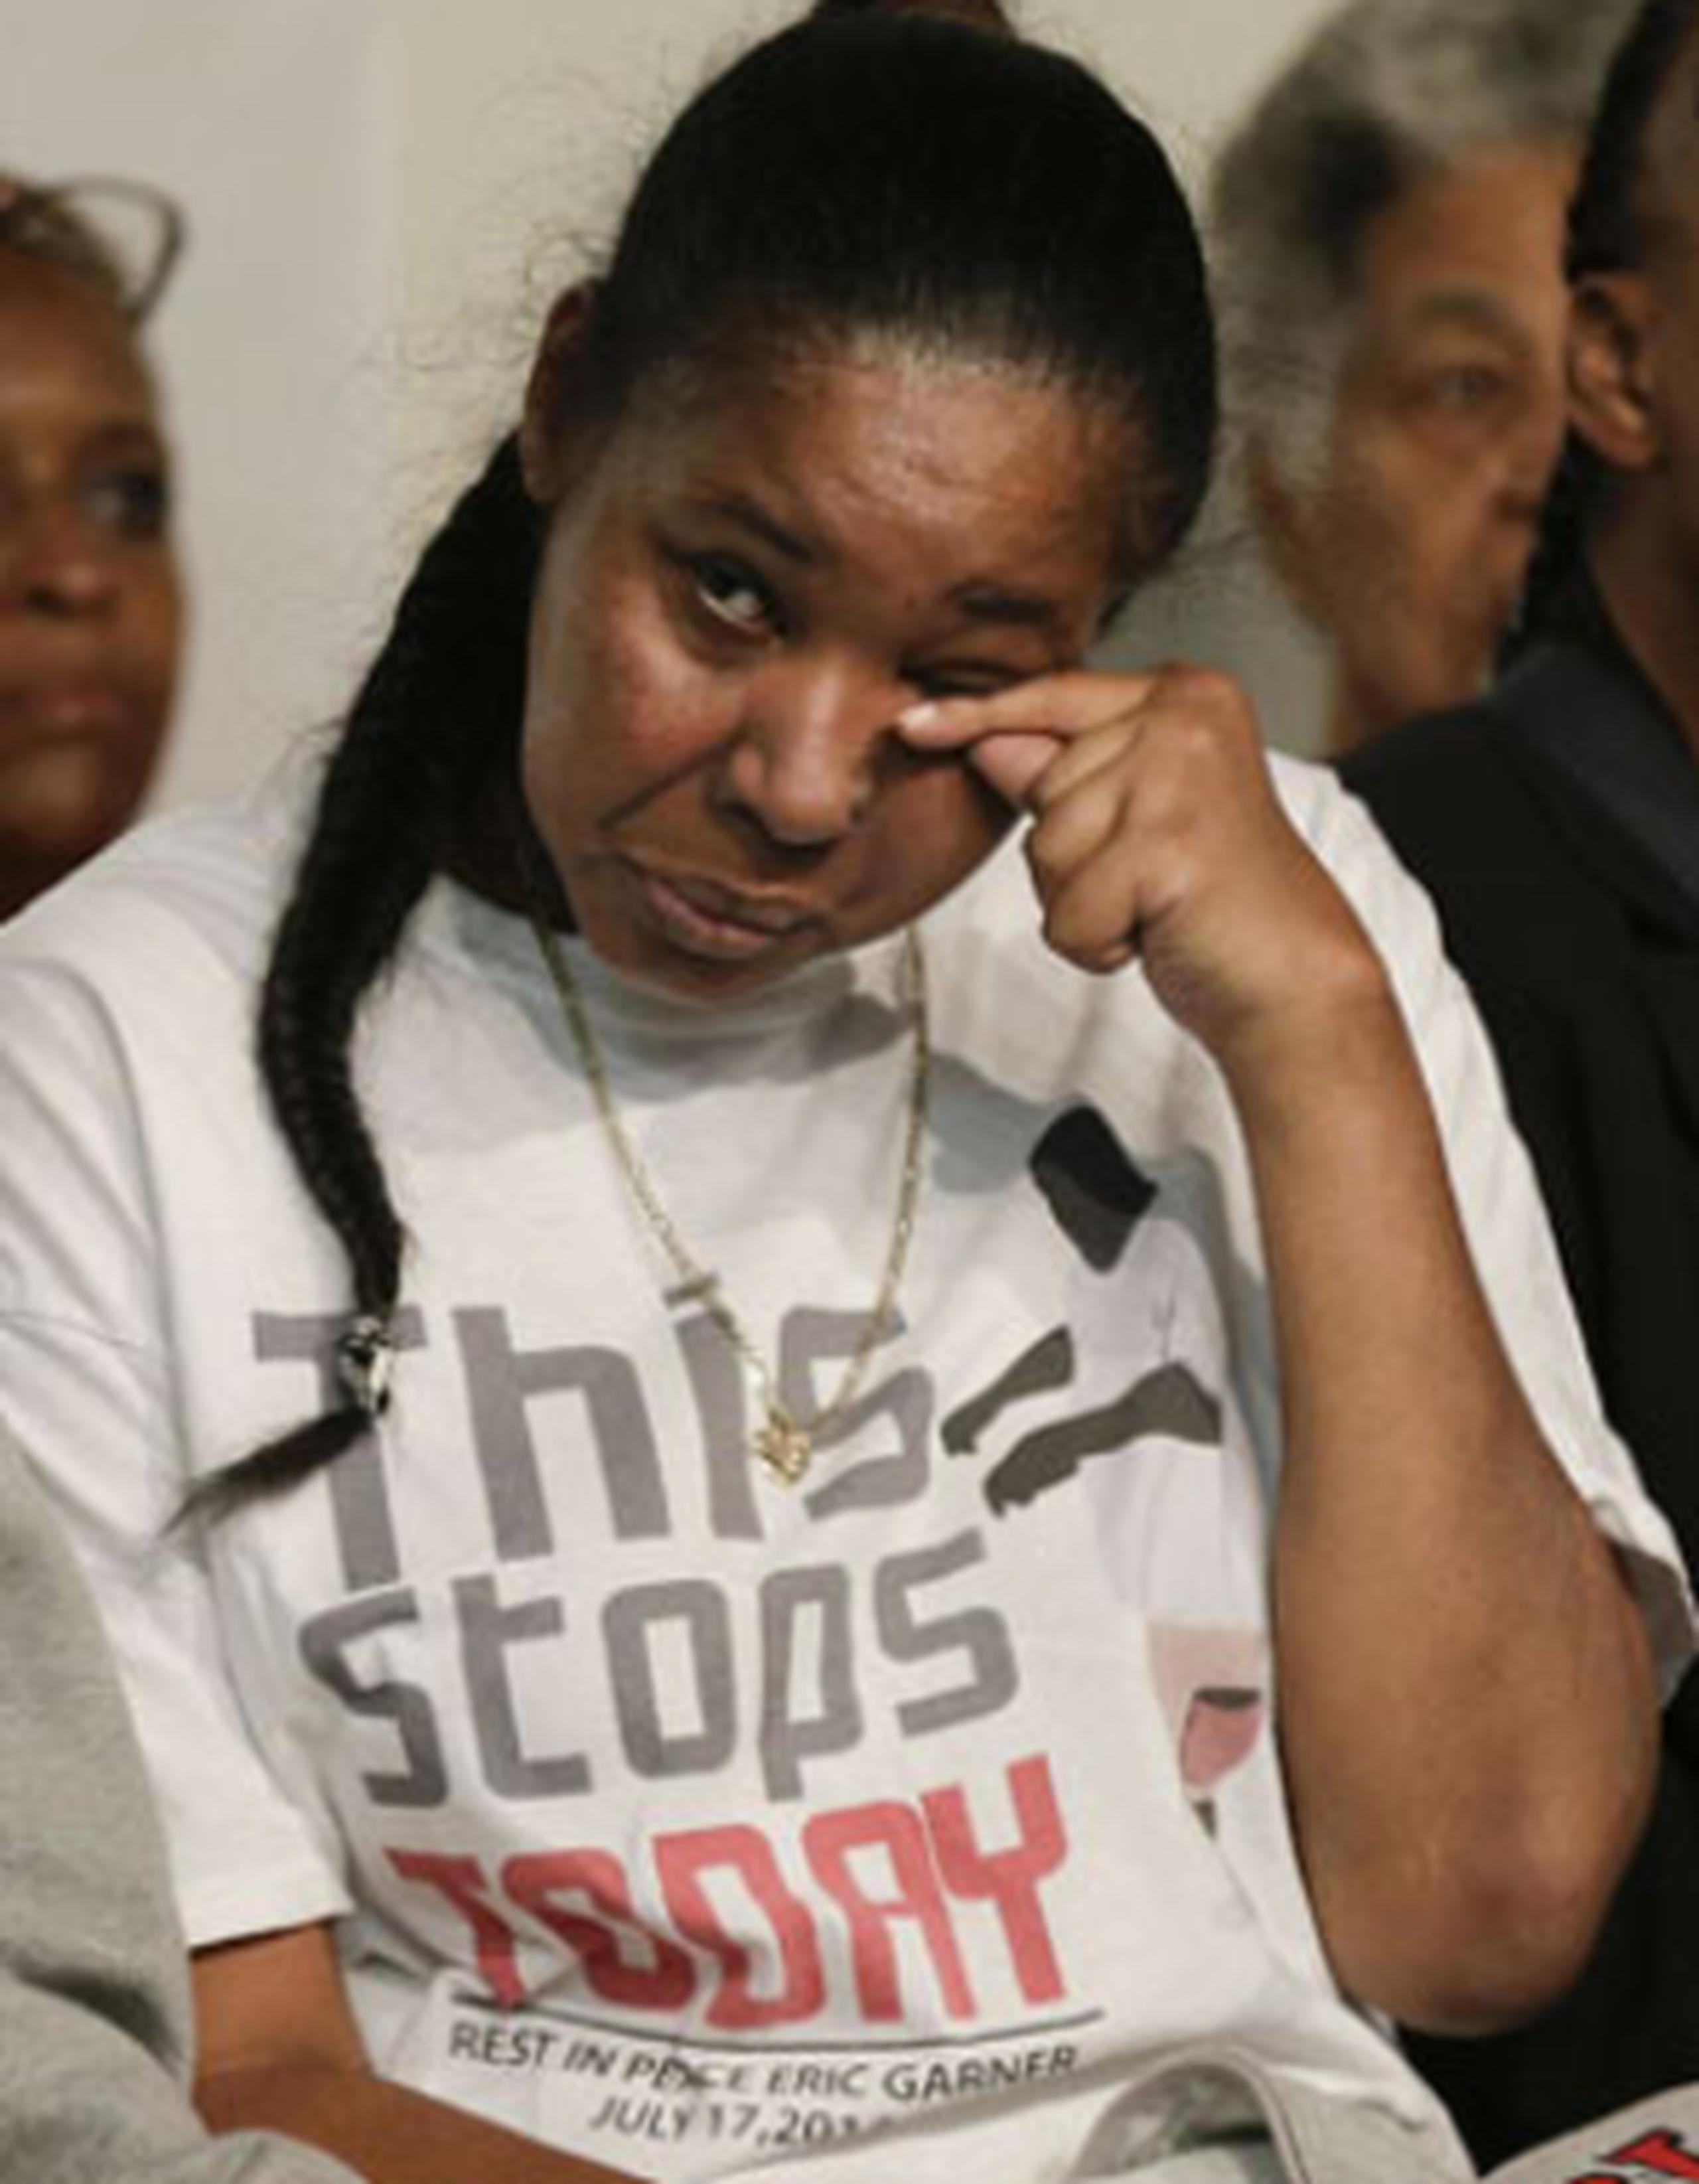 La viuda vistió una camiseta con el lema "This Stops Today", supuestamente,  las últimas palabras que su marido dijo a los policías que fueron a arrestarlo por vender cigarrillos de forma ilegal y que, a su juicio, lo acosaban. (AP)
